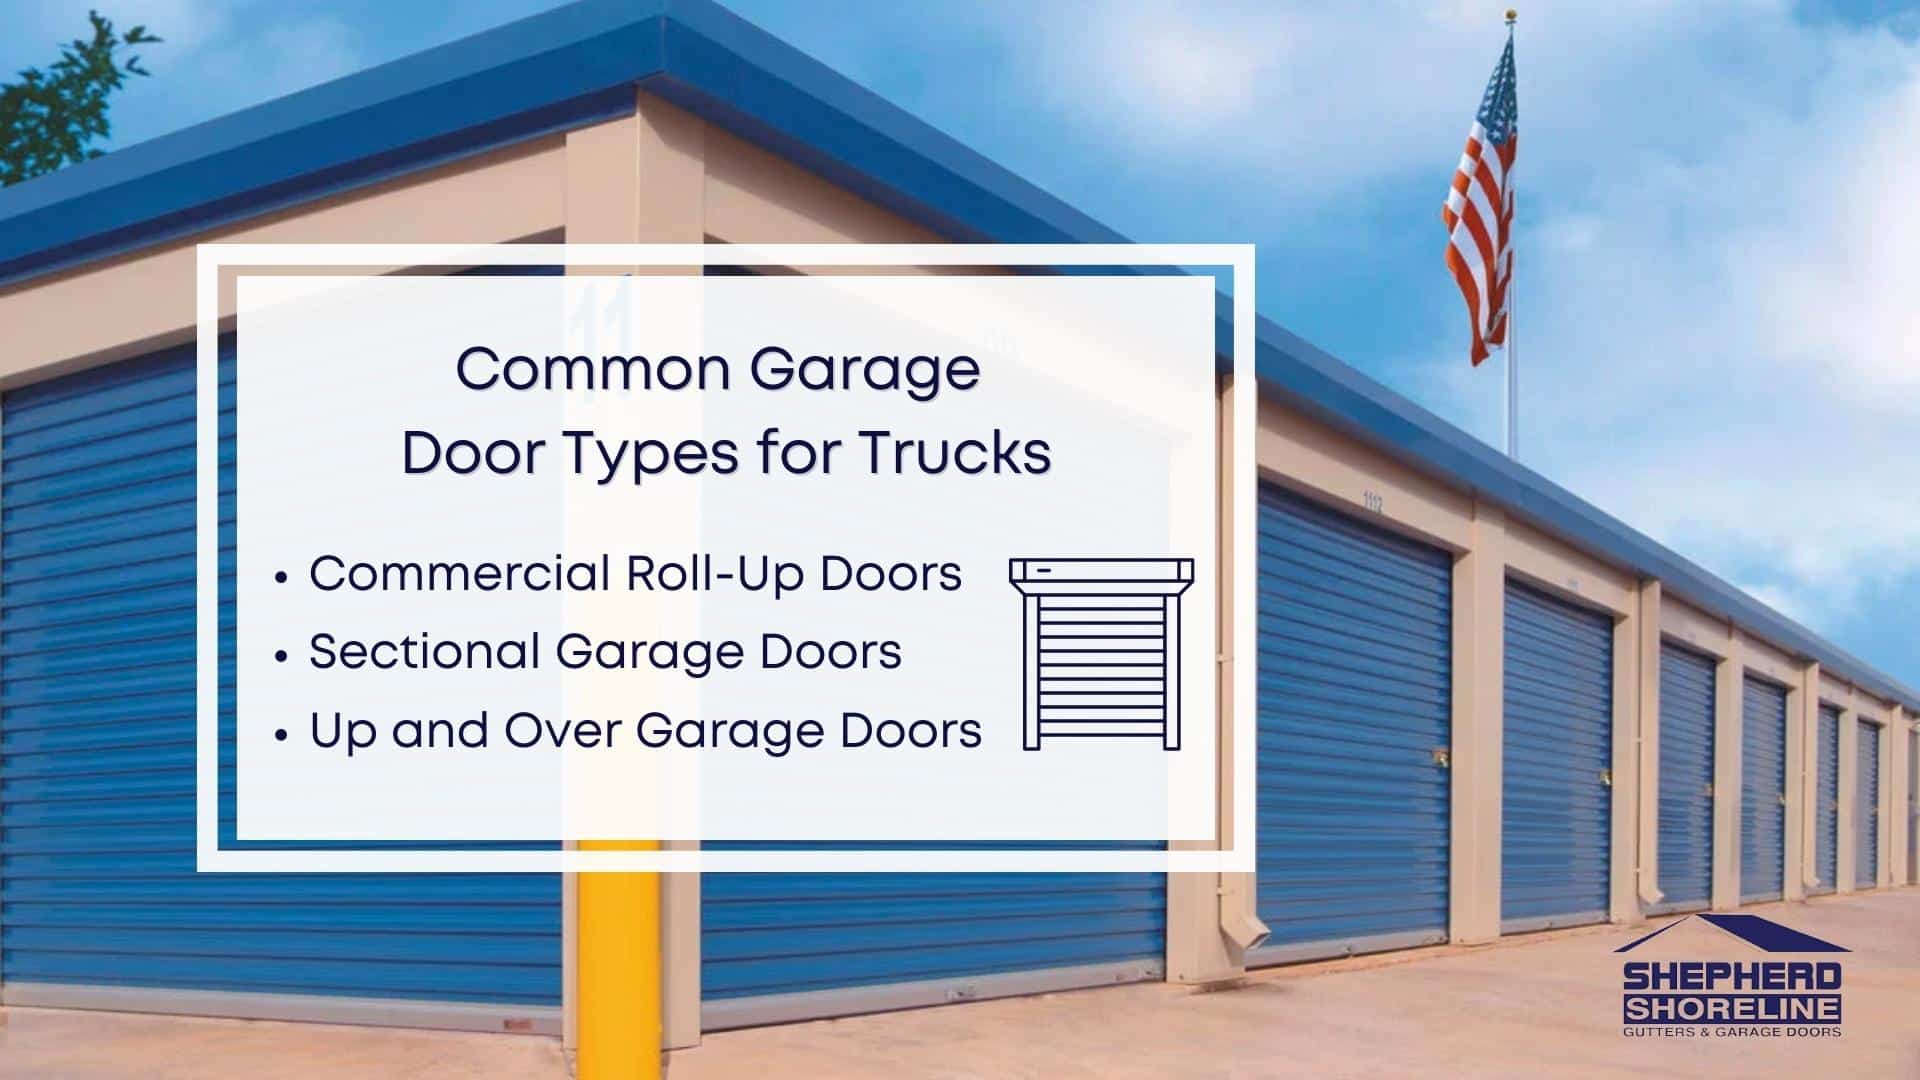 Infographic image of common garage door types for trucks